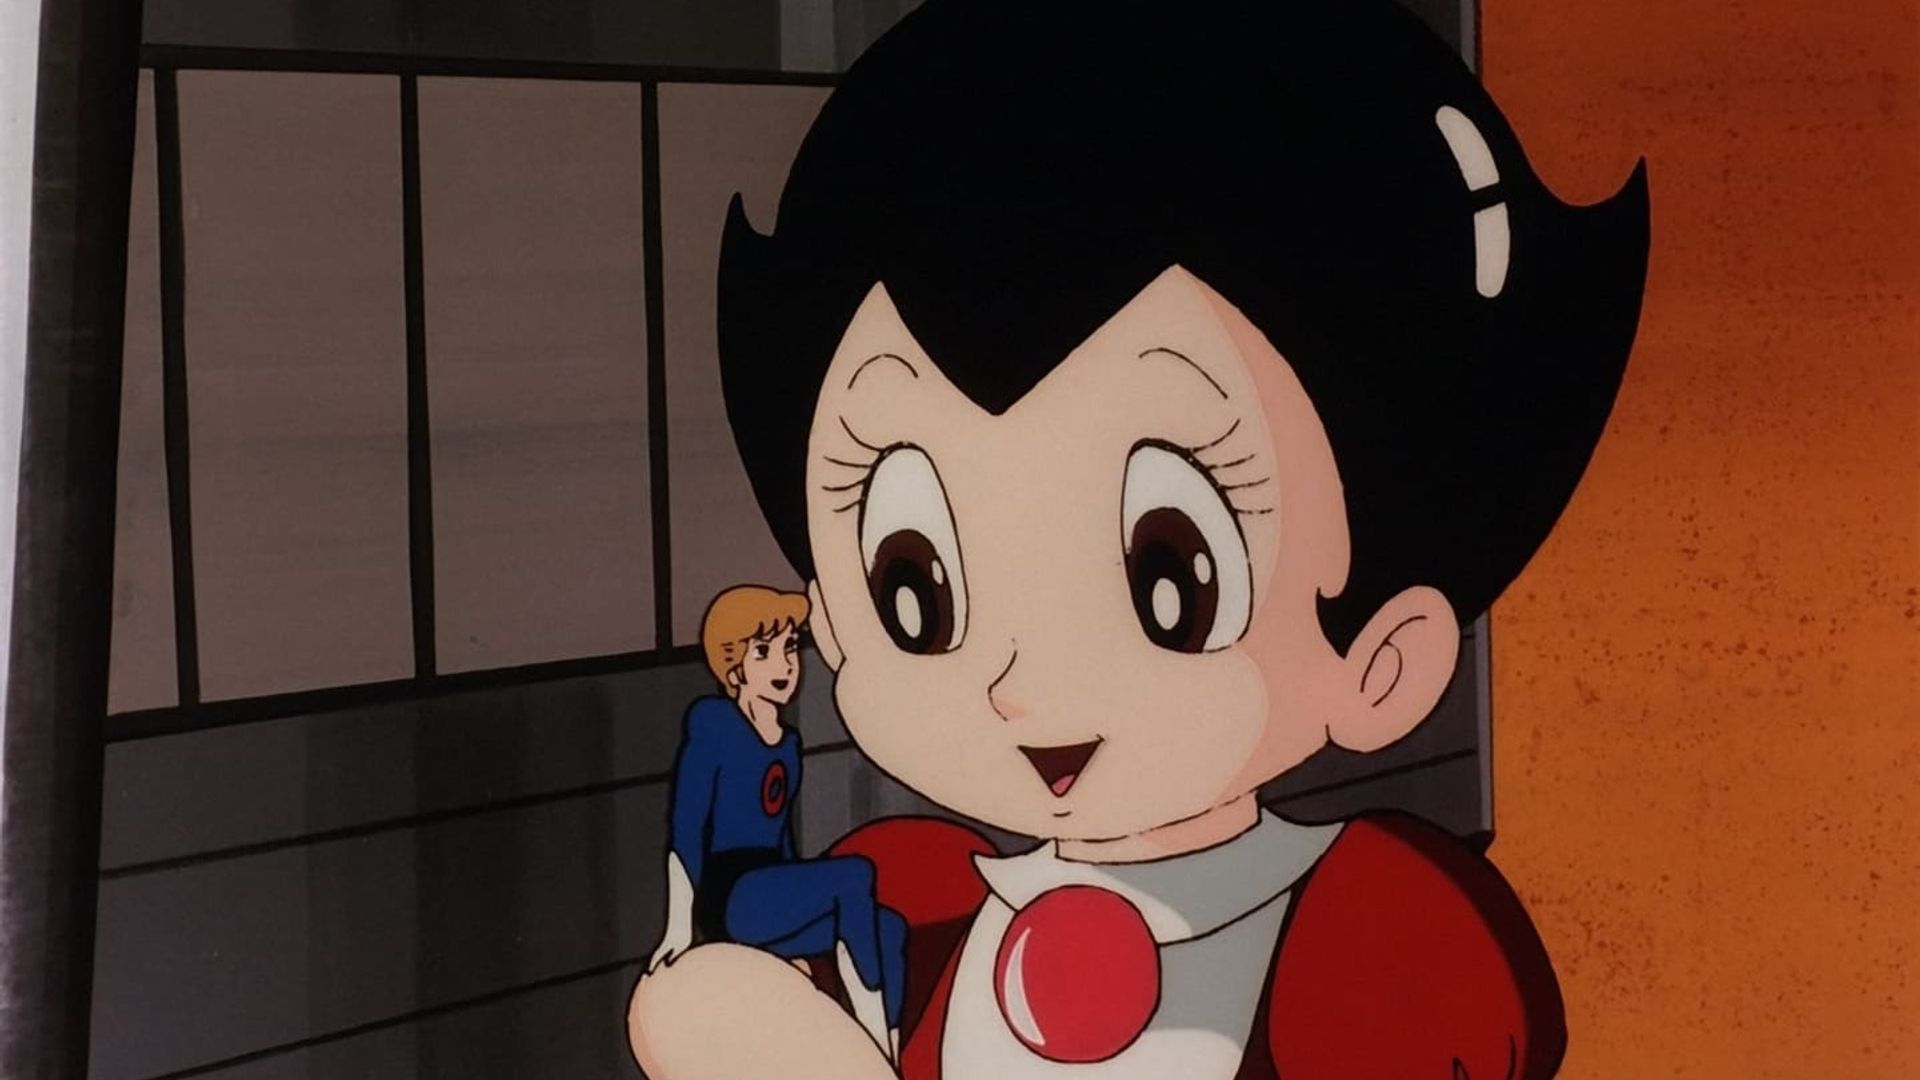 Astro Boy background